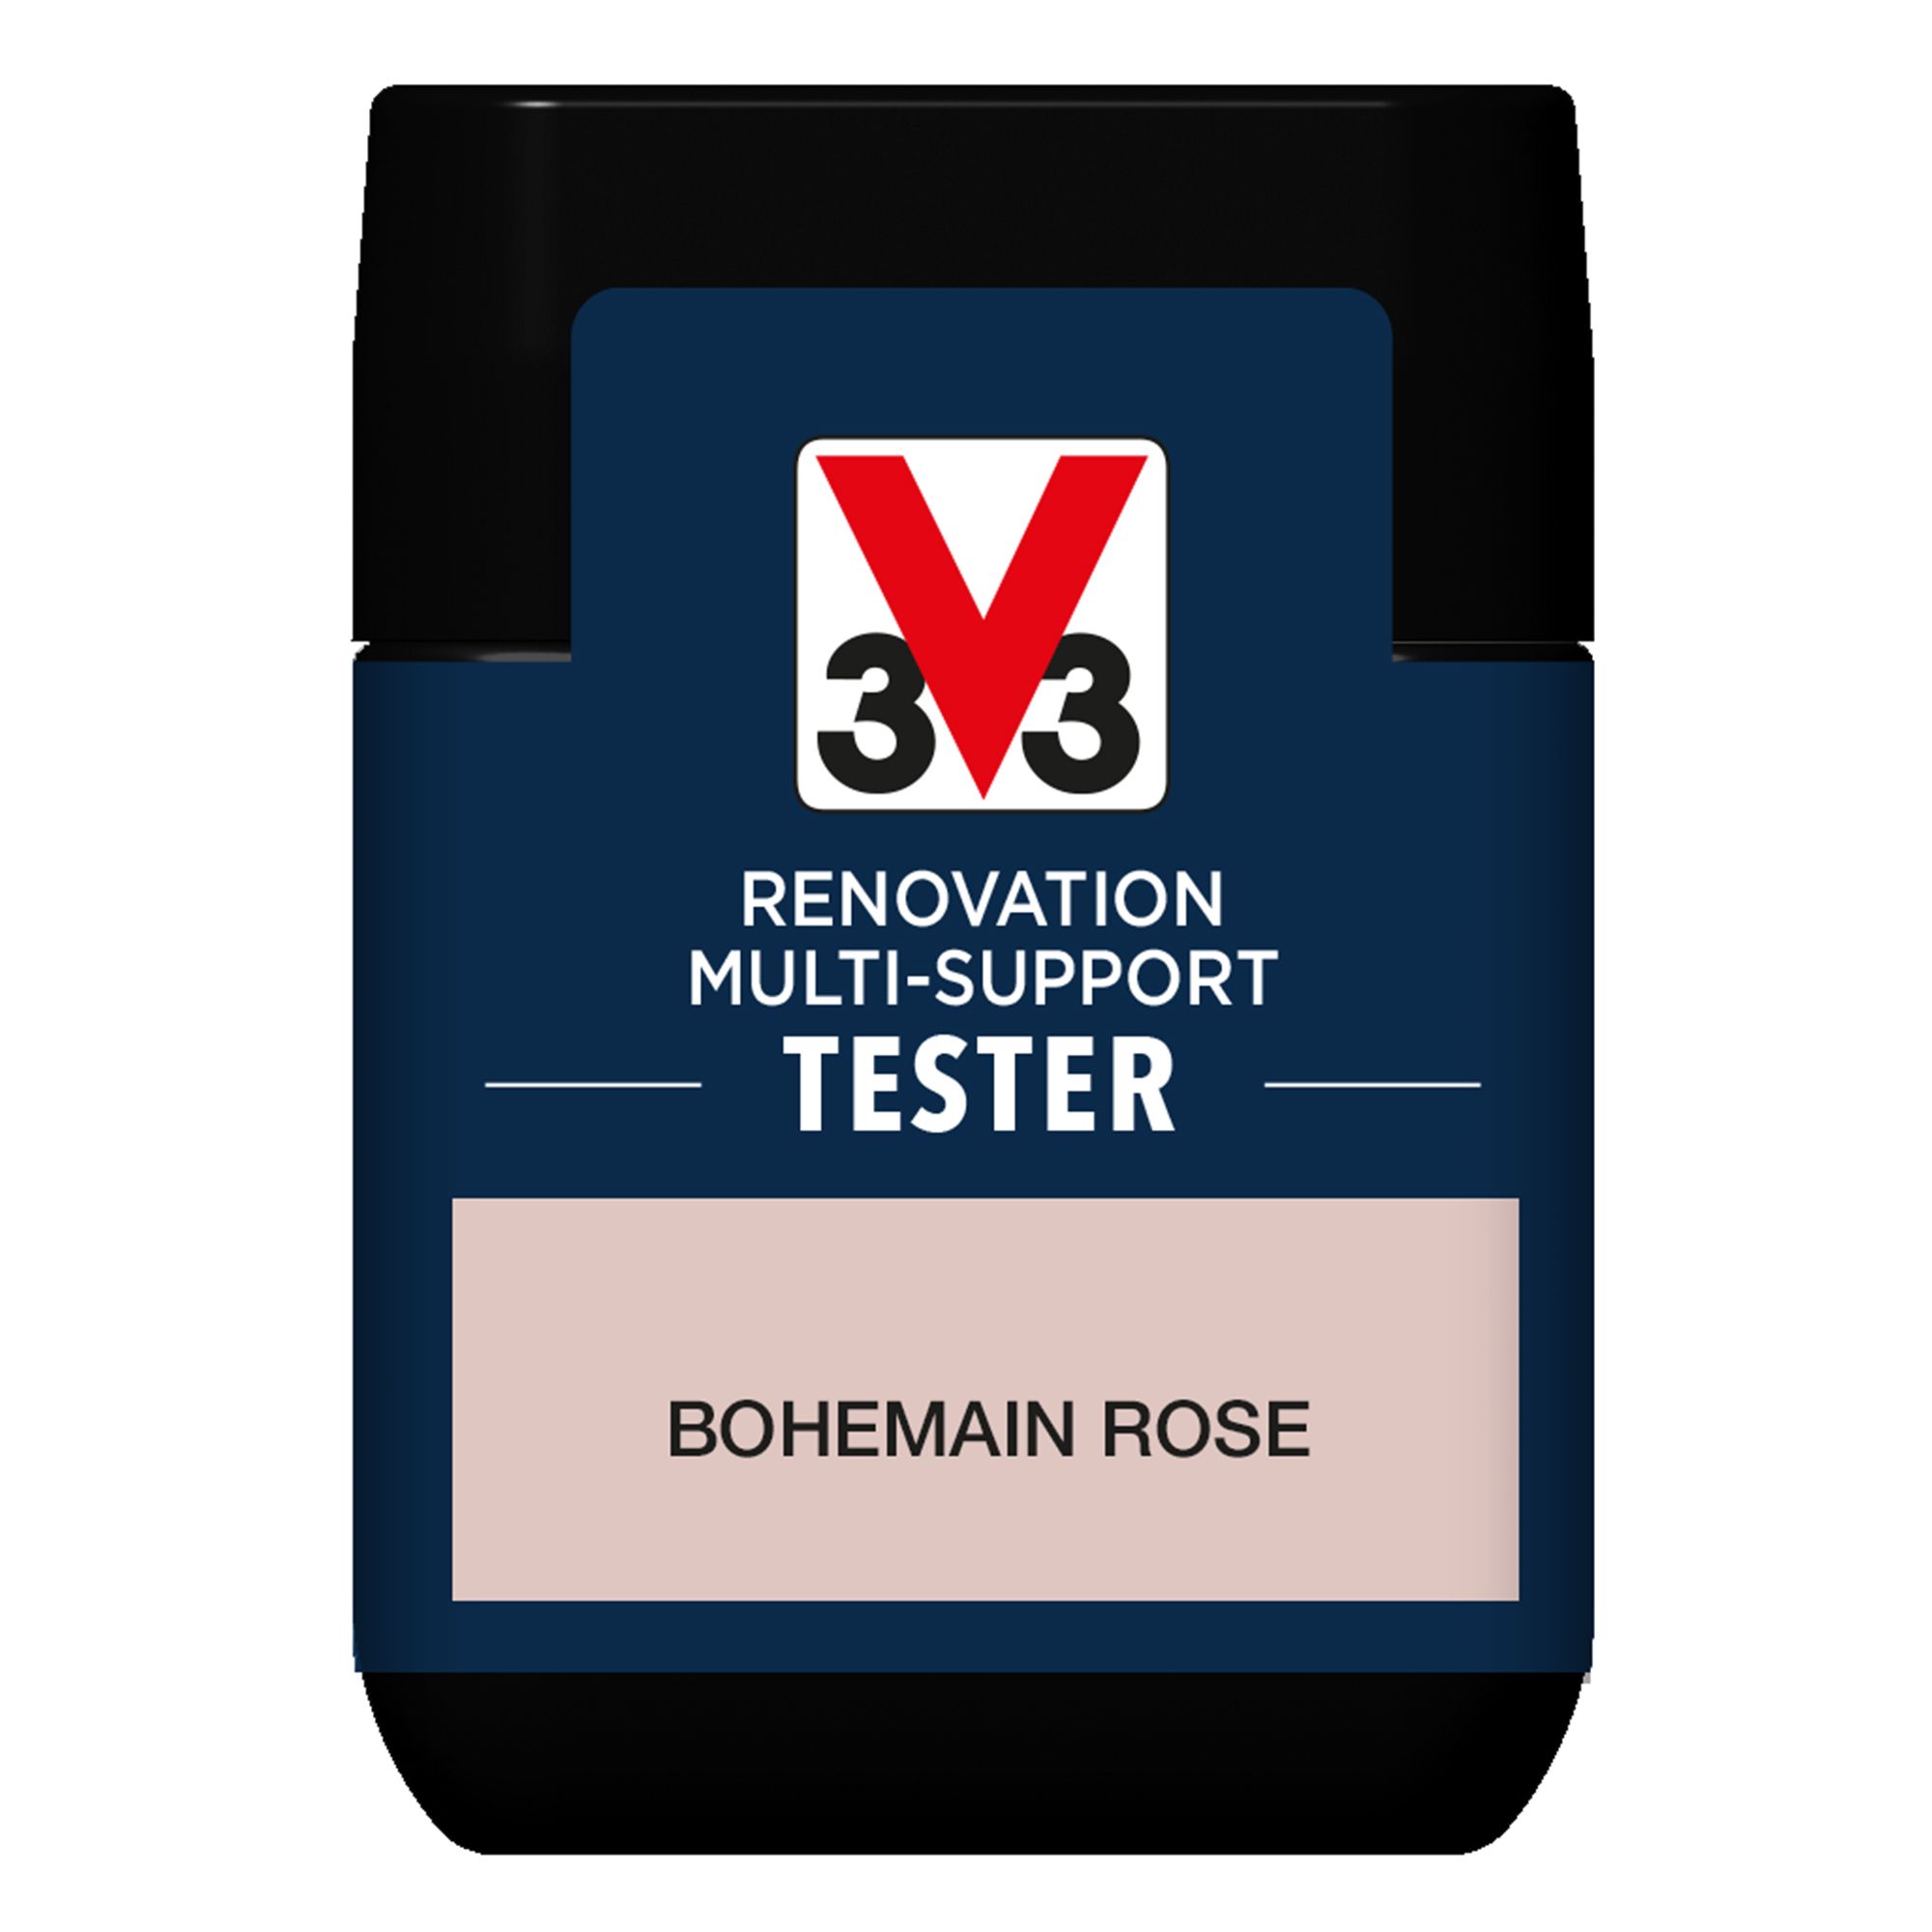 V33 Renovation Bohemian Rose Satinwood Multi-surface paint, 50ml Tester pot